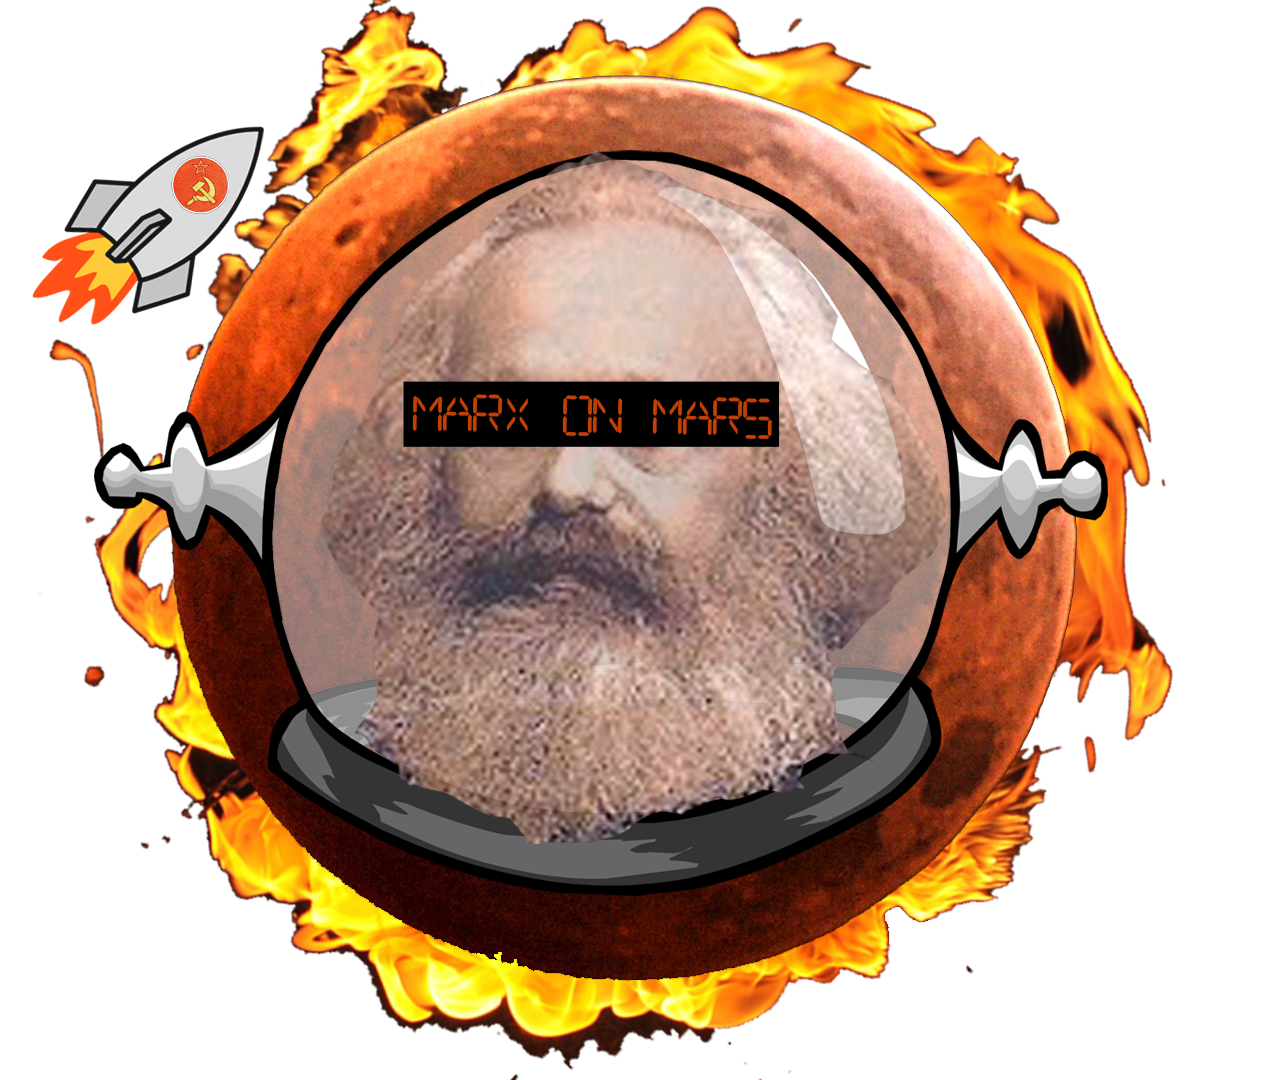 Marx on Mars